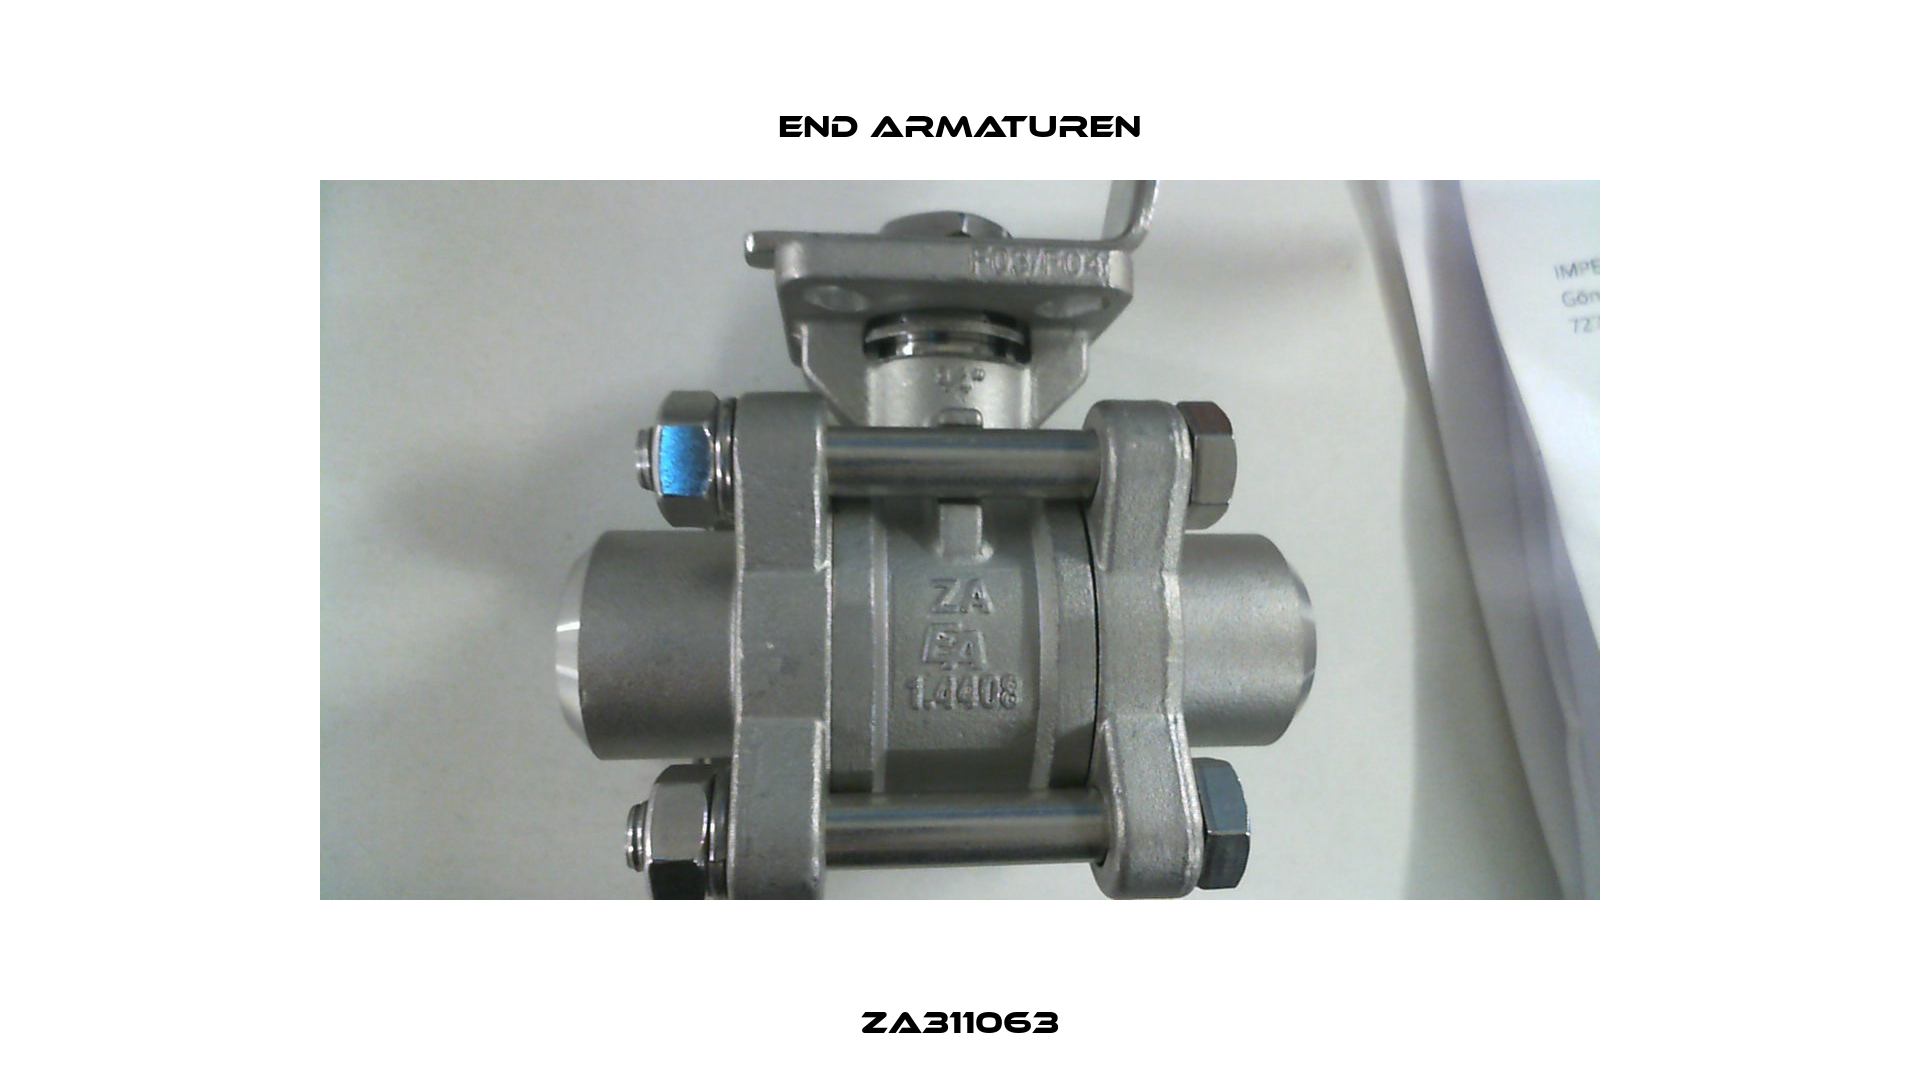 ZA311063 End Armaturen